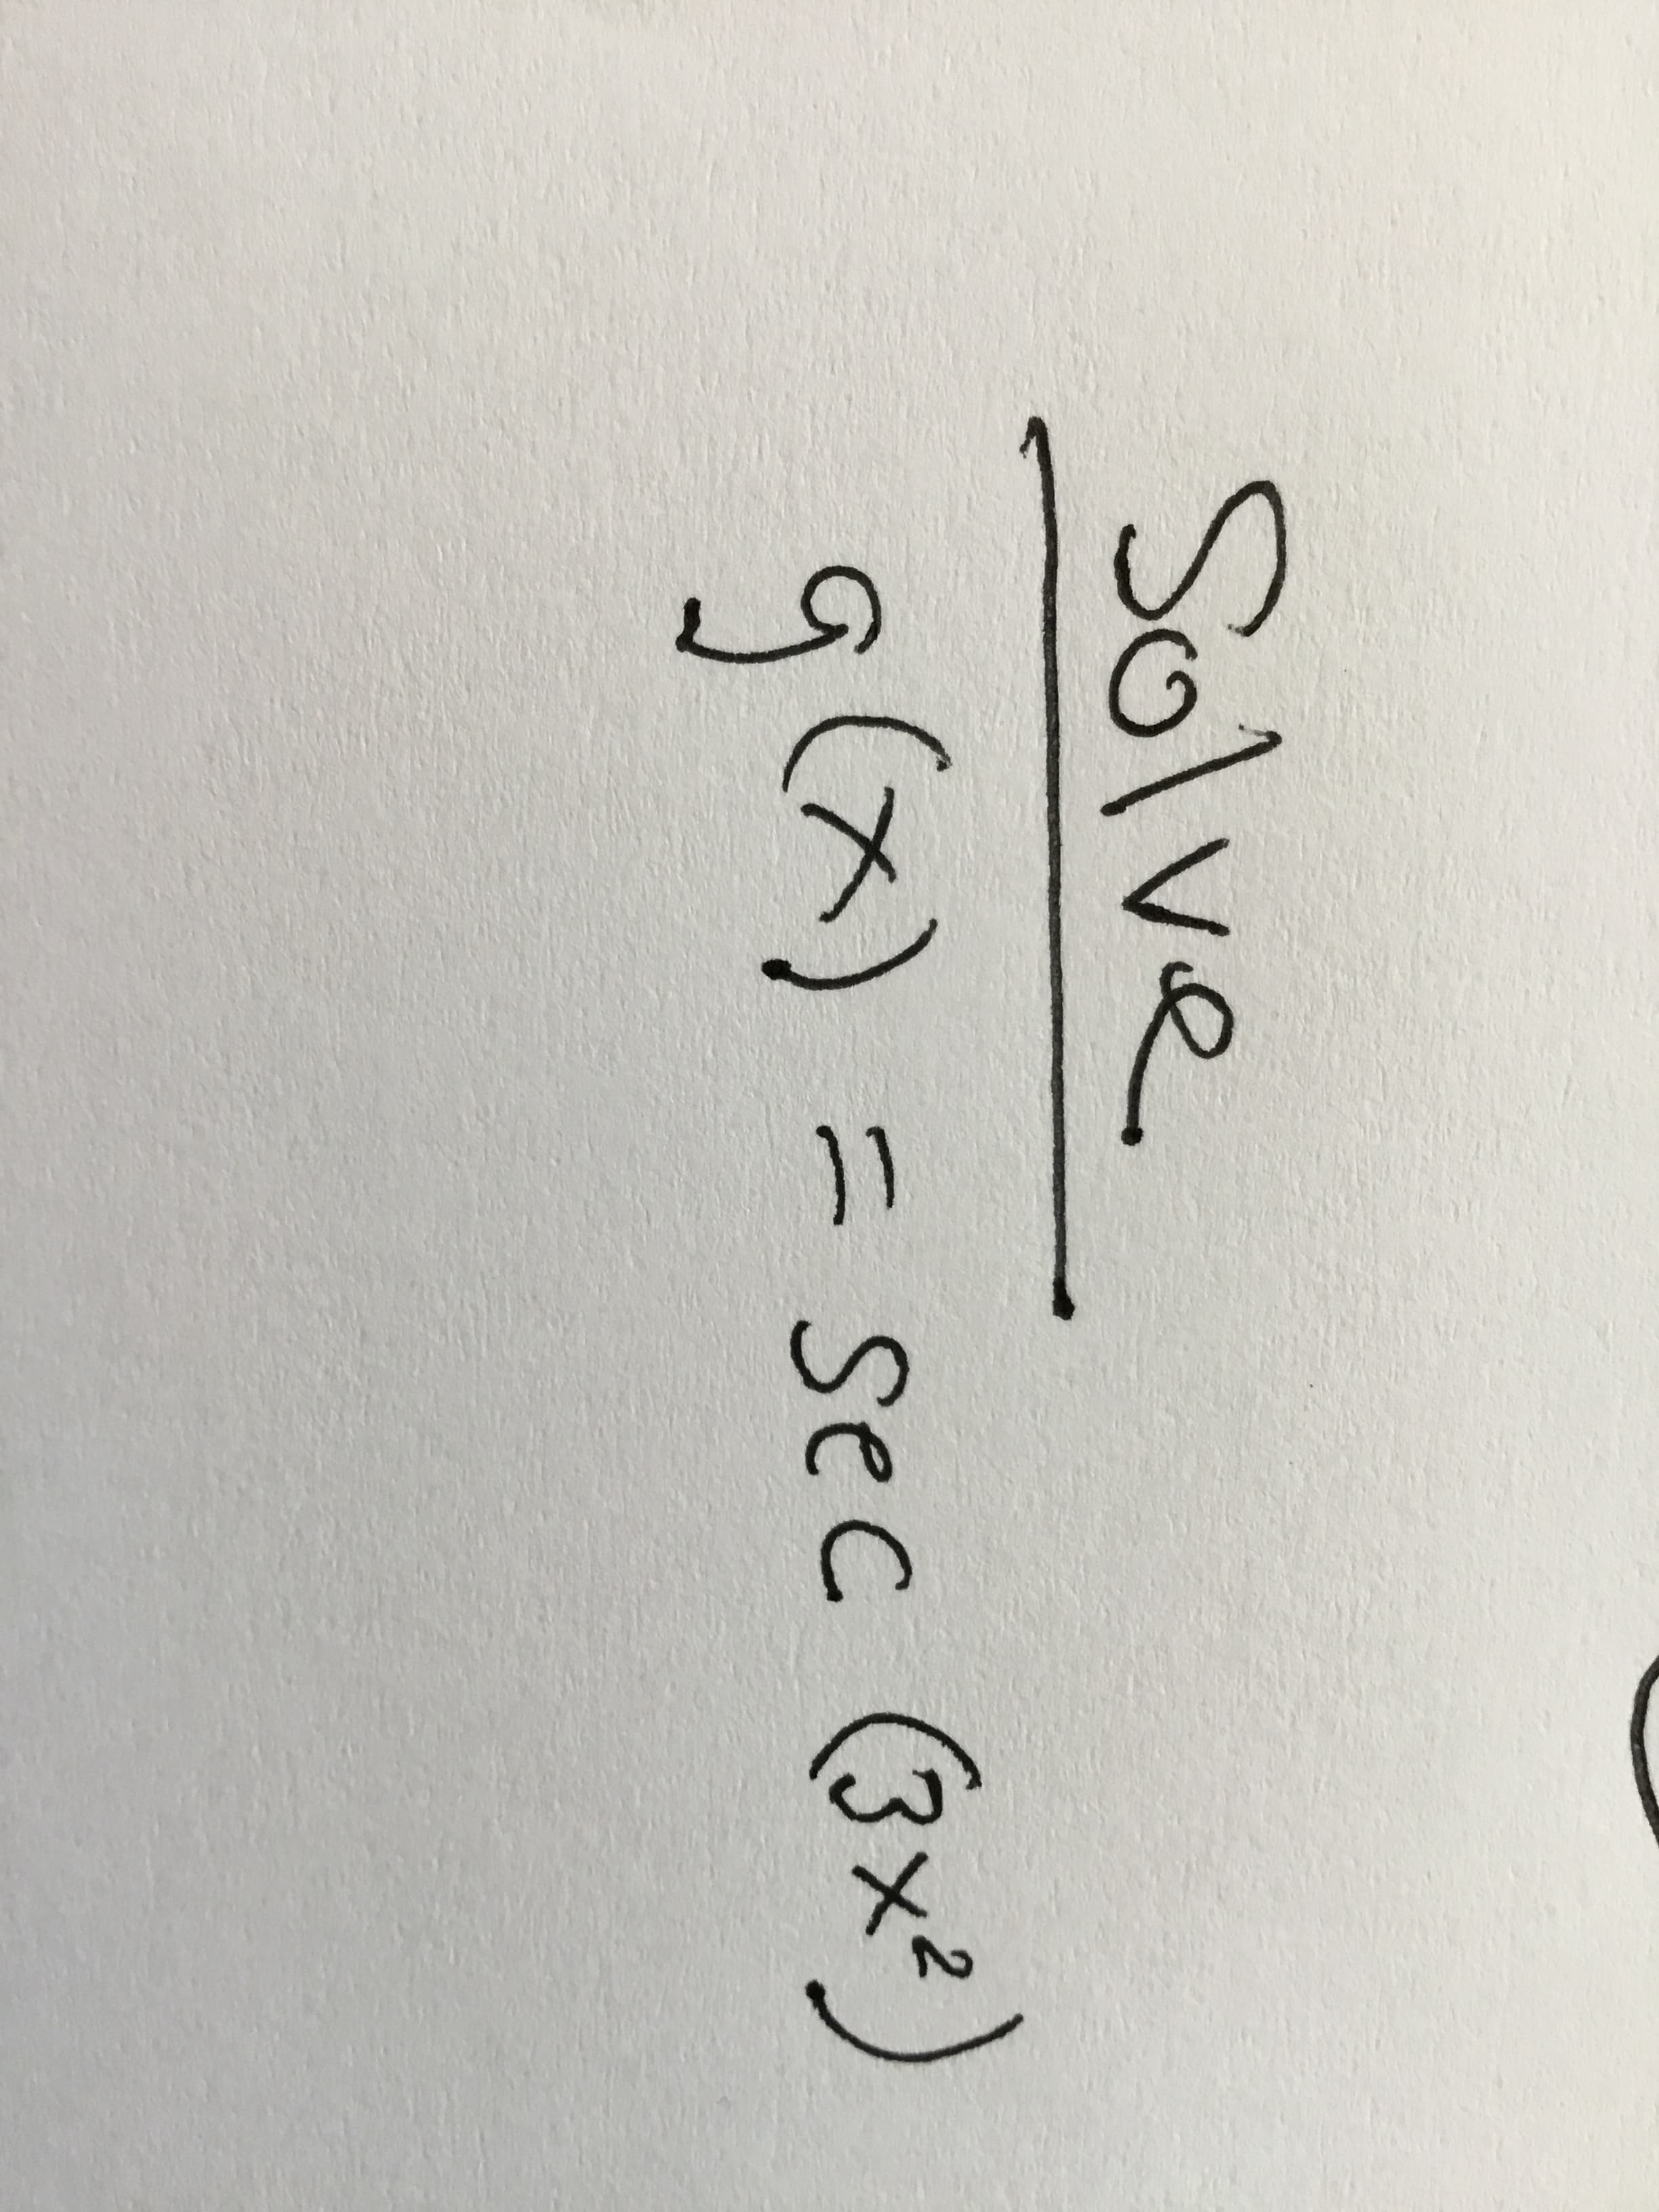 Solve
g(x)
= sec (3x2)
C.
